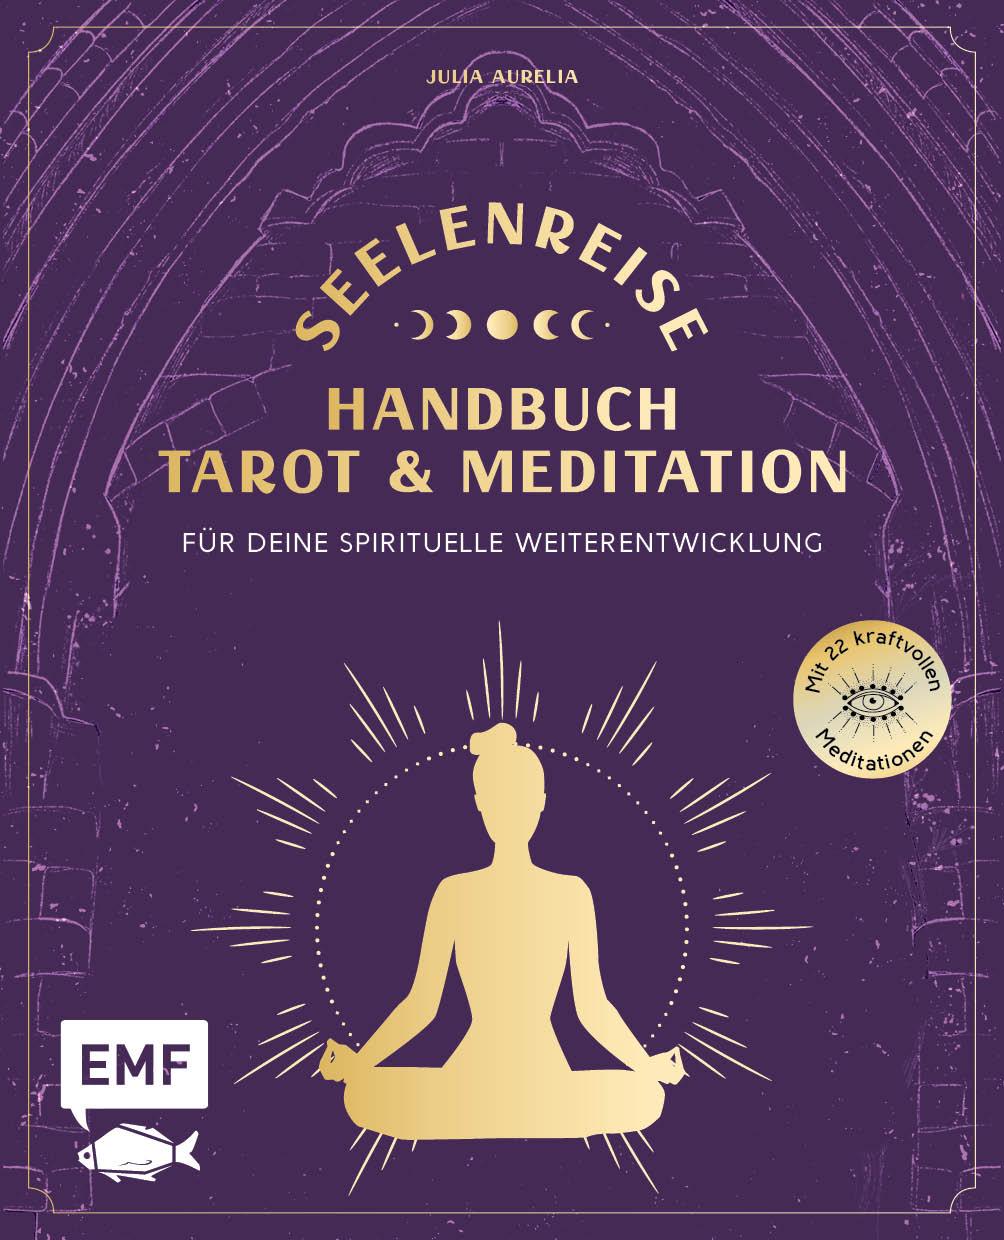 Book Seelenreise - Tarot und Meditation: Handbuch für deine spirituelle Weiterentwicklung 